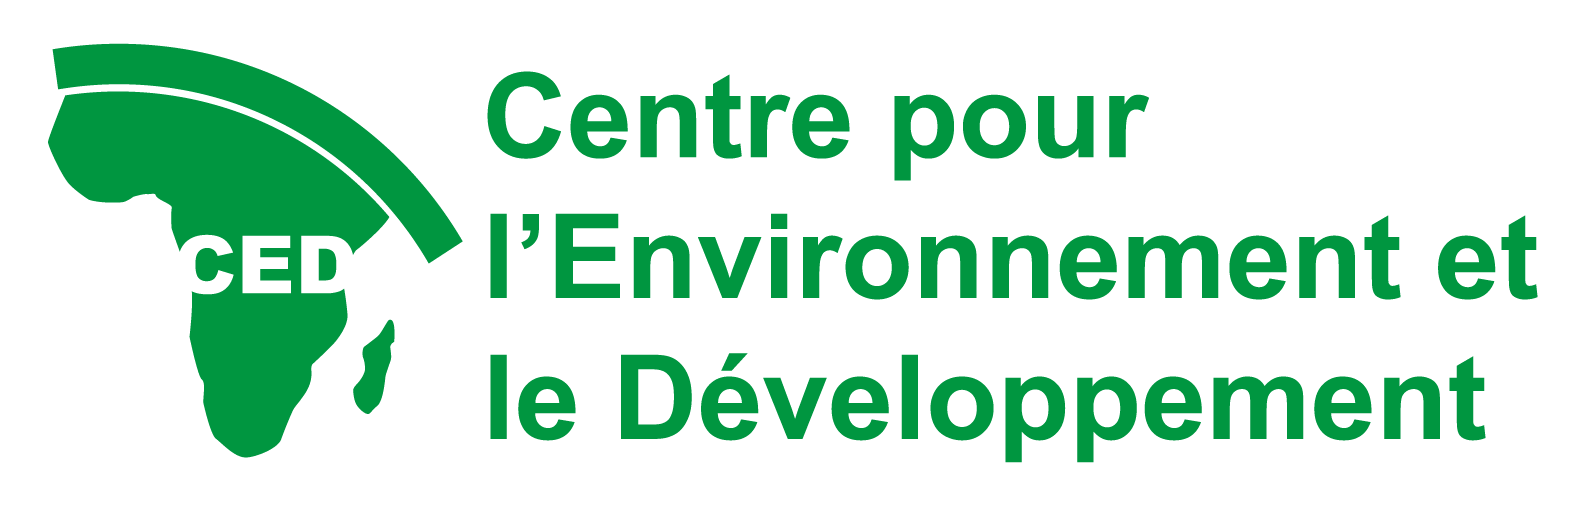 Centre pour l’Environnement et le Développement (CED)